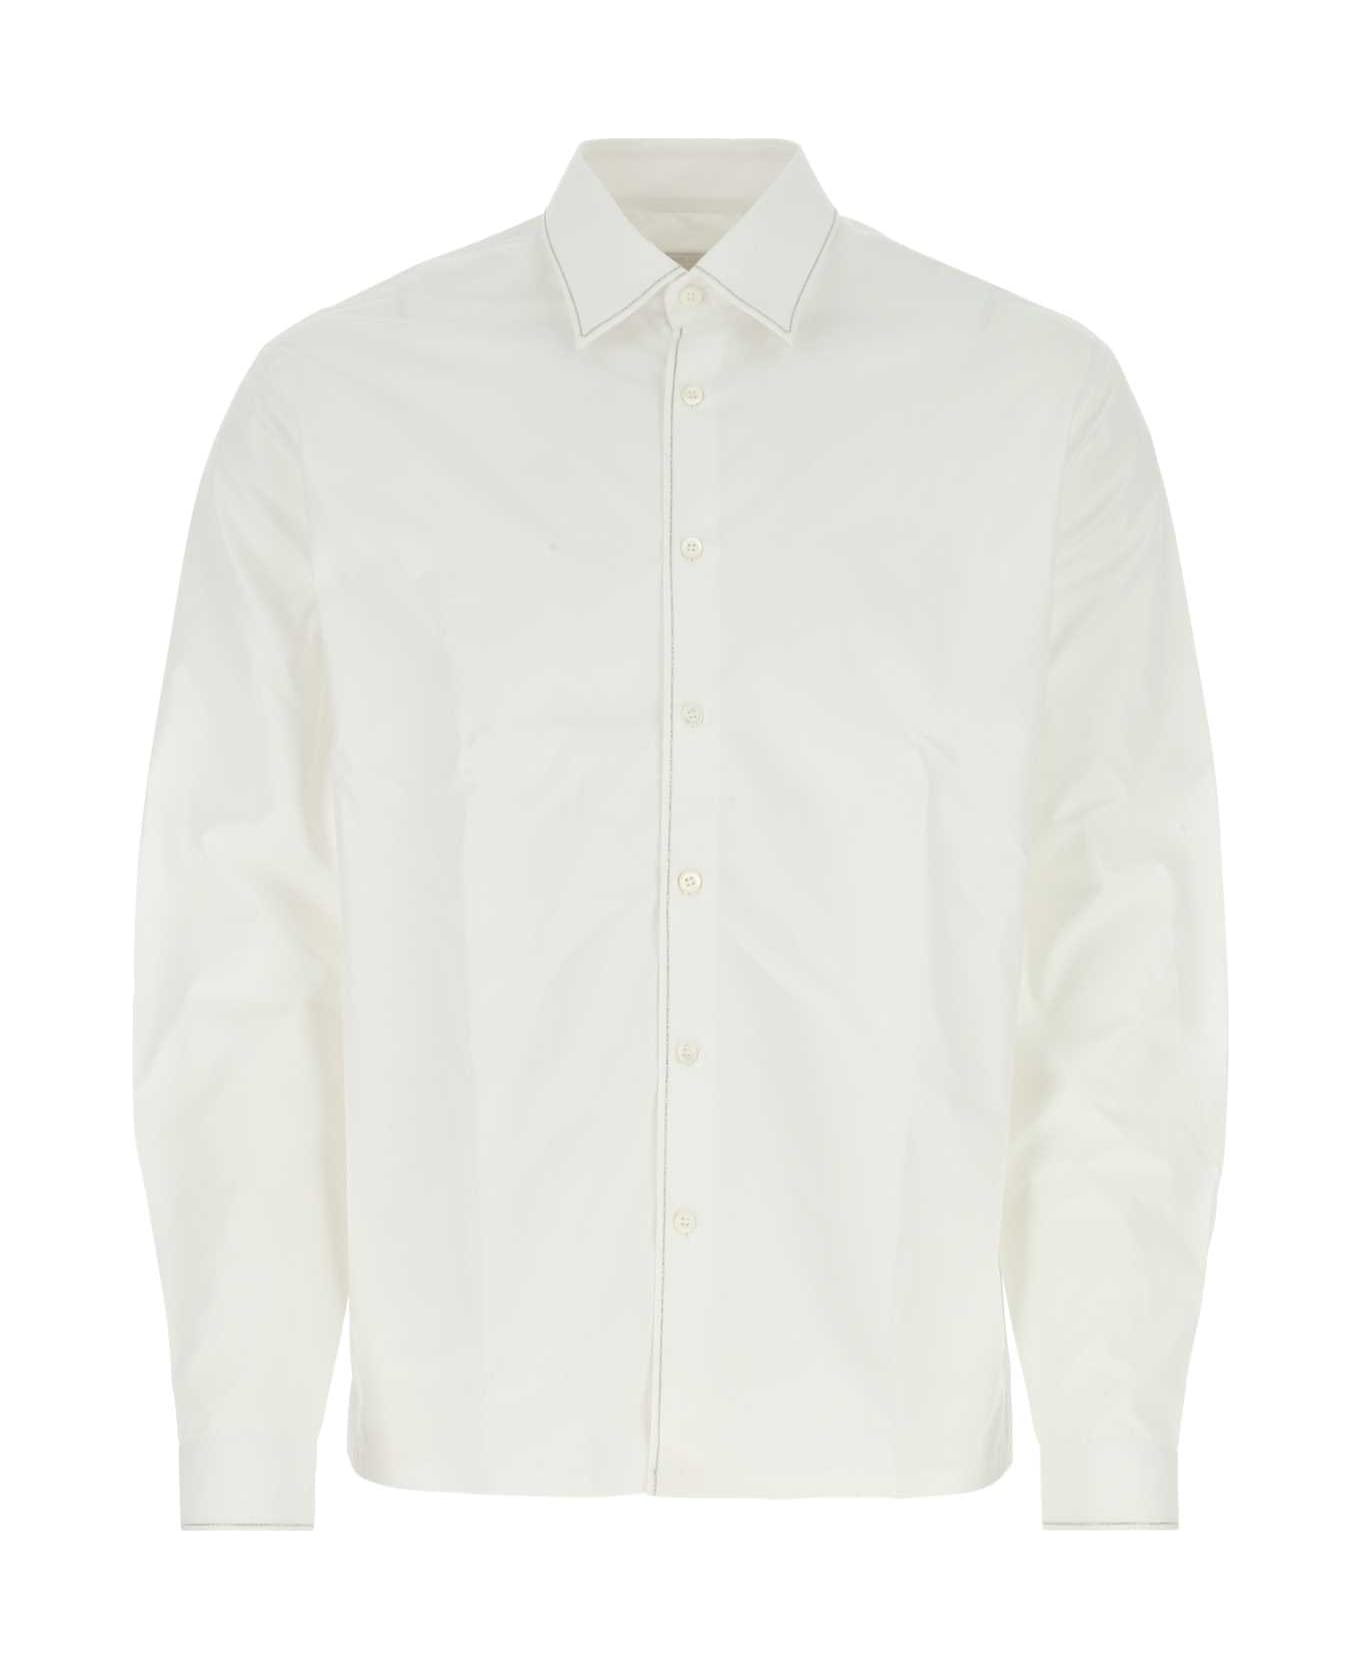 Prada White Poplin Shirt - White シャツ